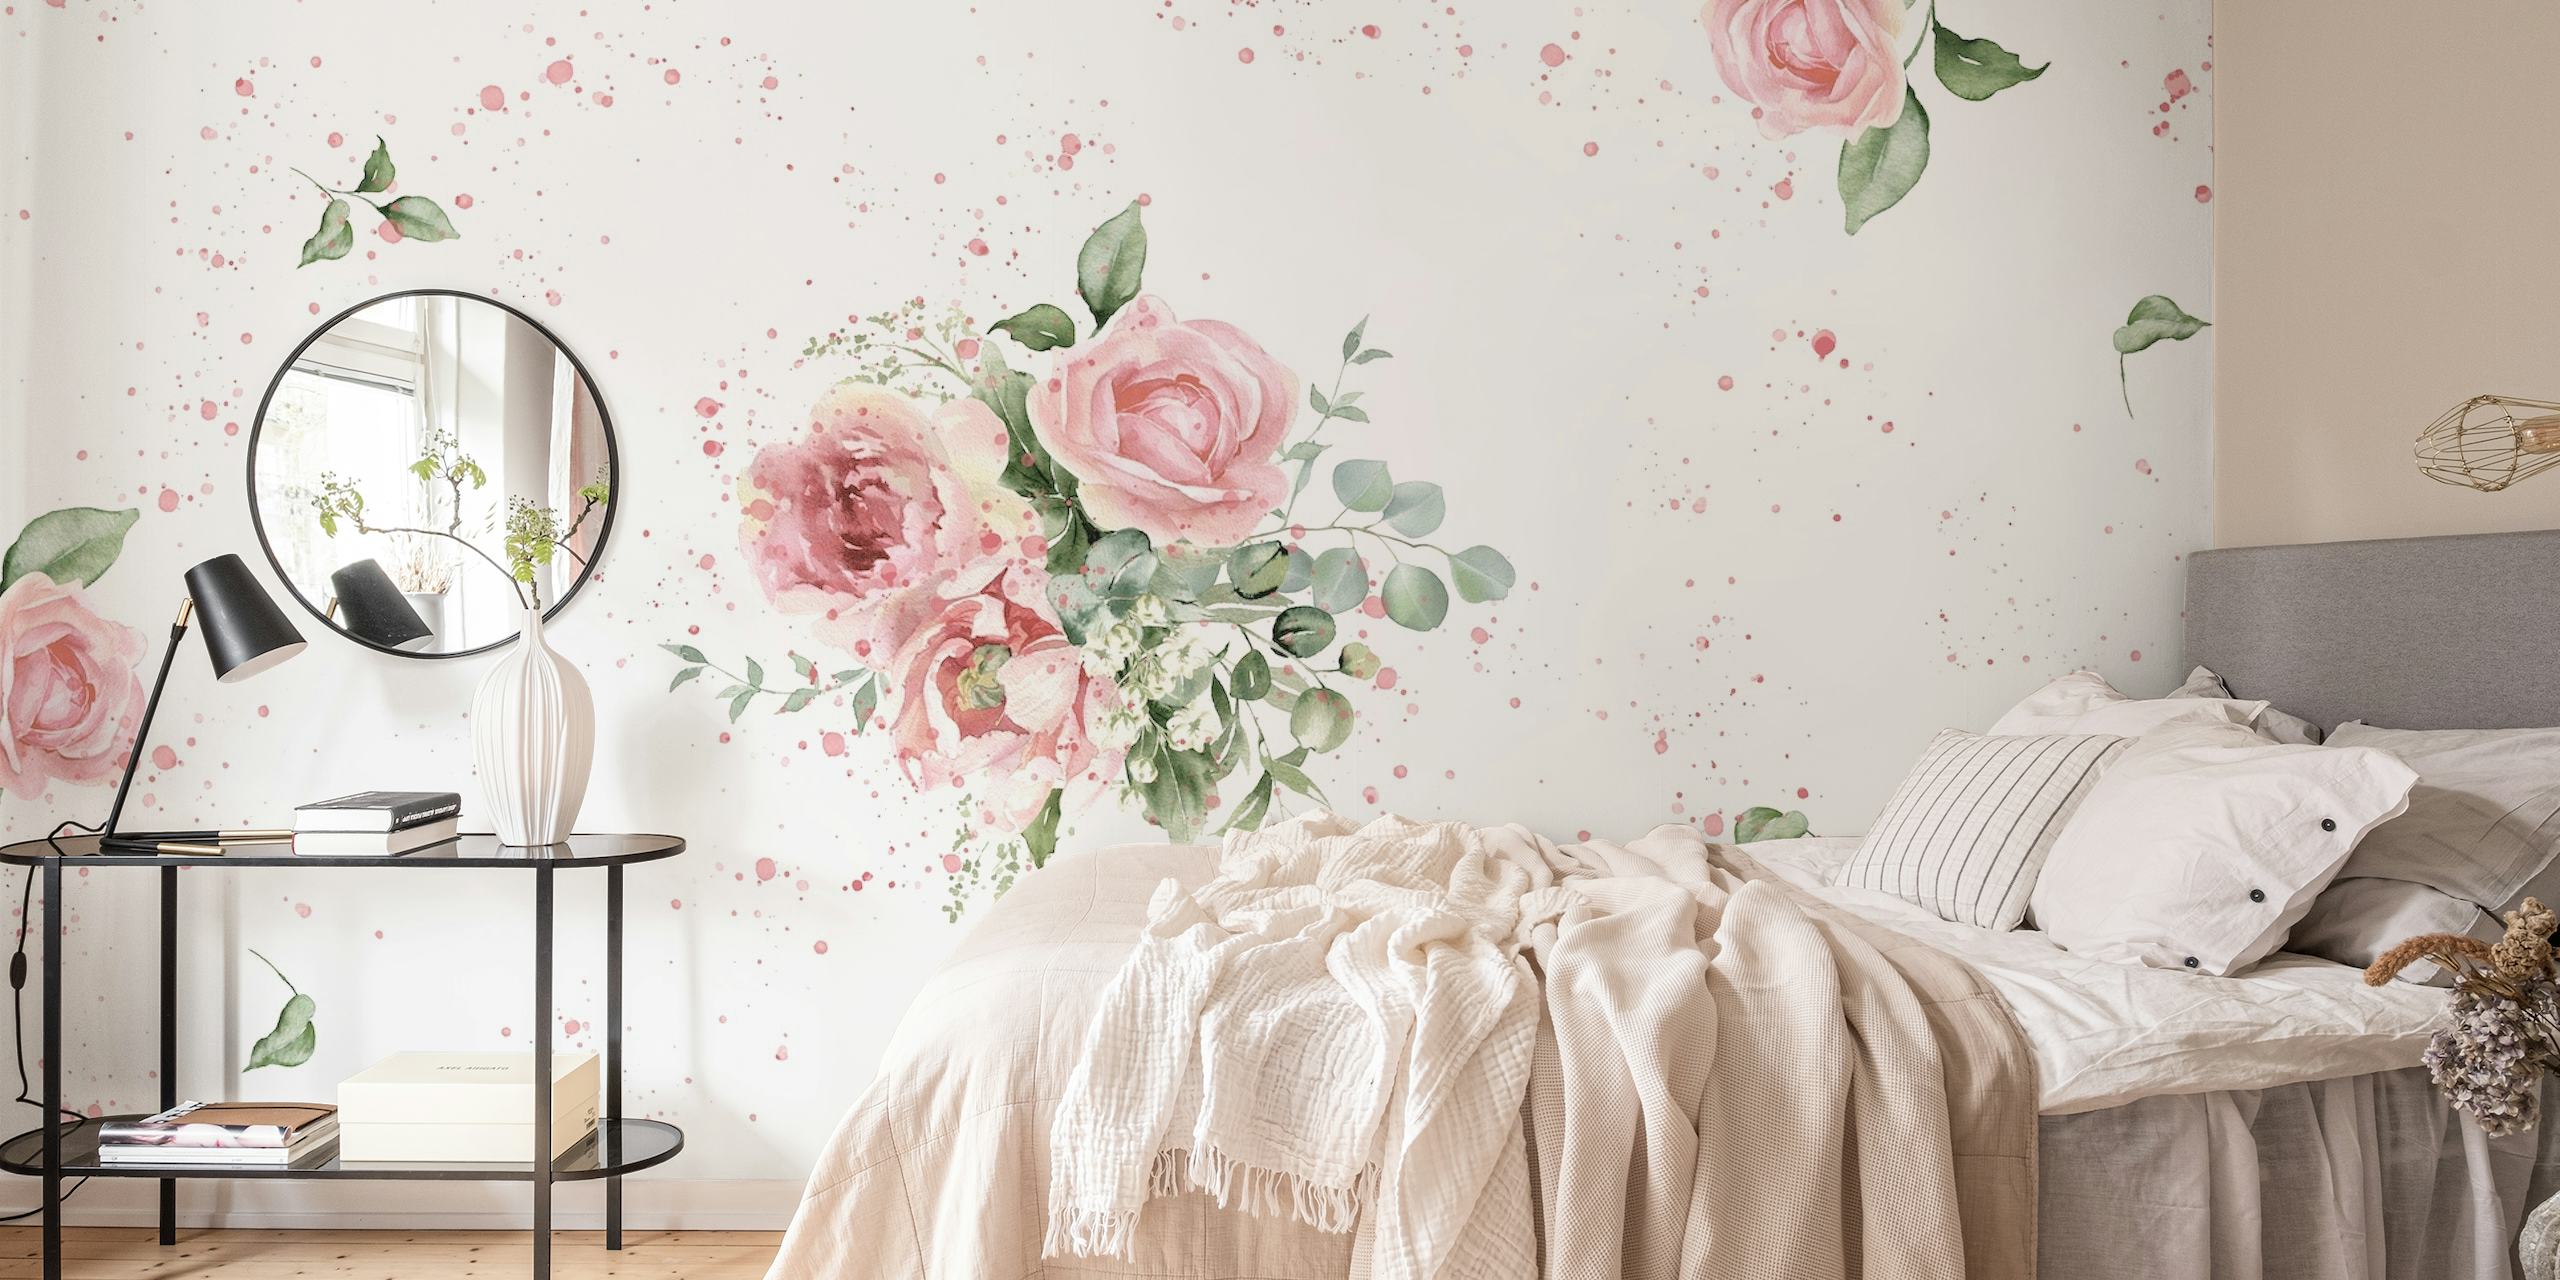 Elegant watercolor roses wallpaper